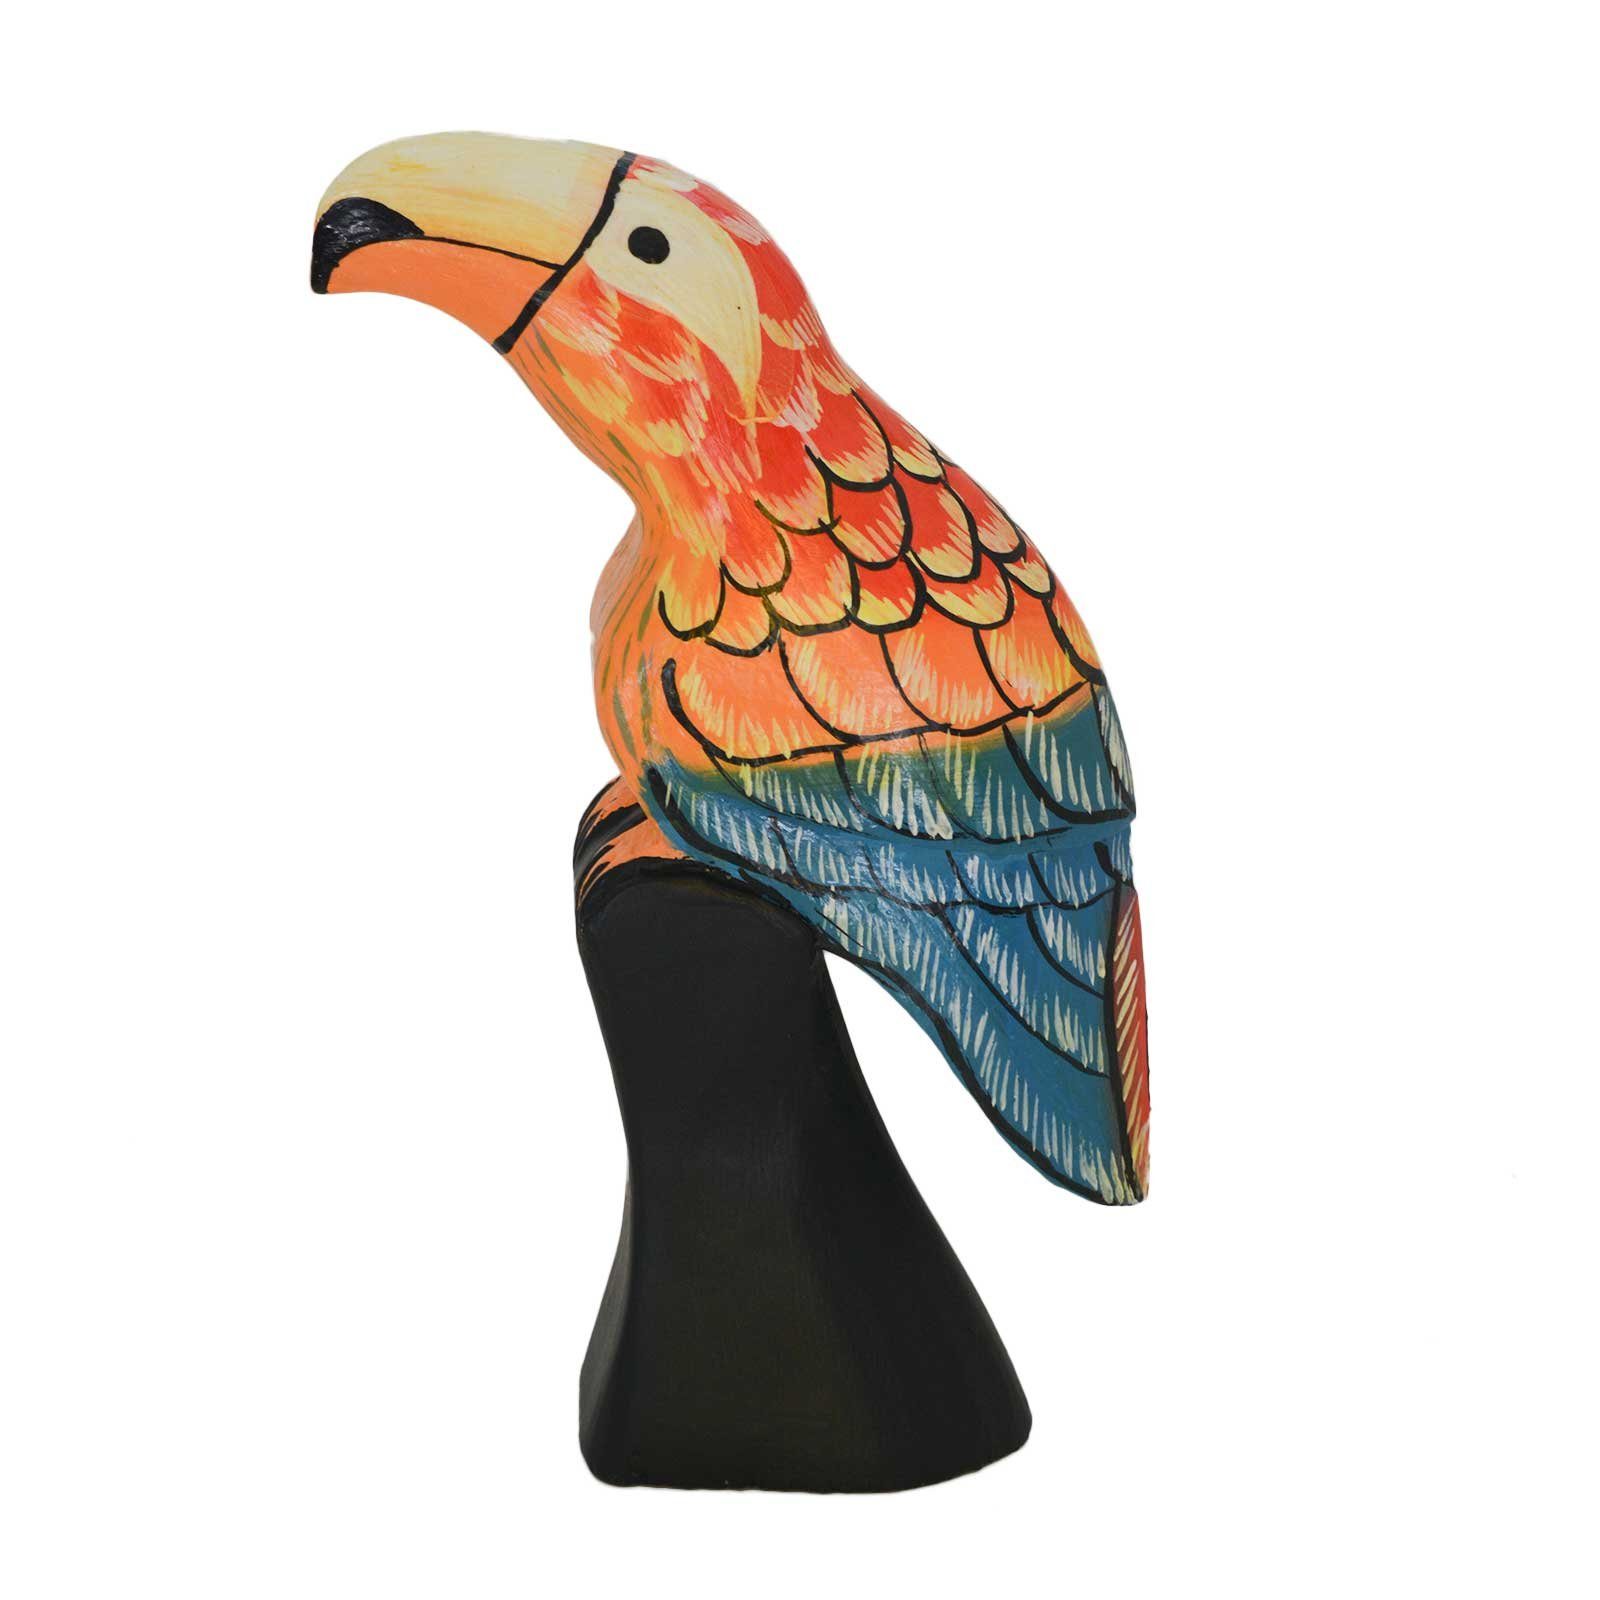 maDDma Tierfigur Papagei Kakadu Ara Vogel, ca. 30 cm, aus Holz, handbemalt in orange